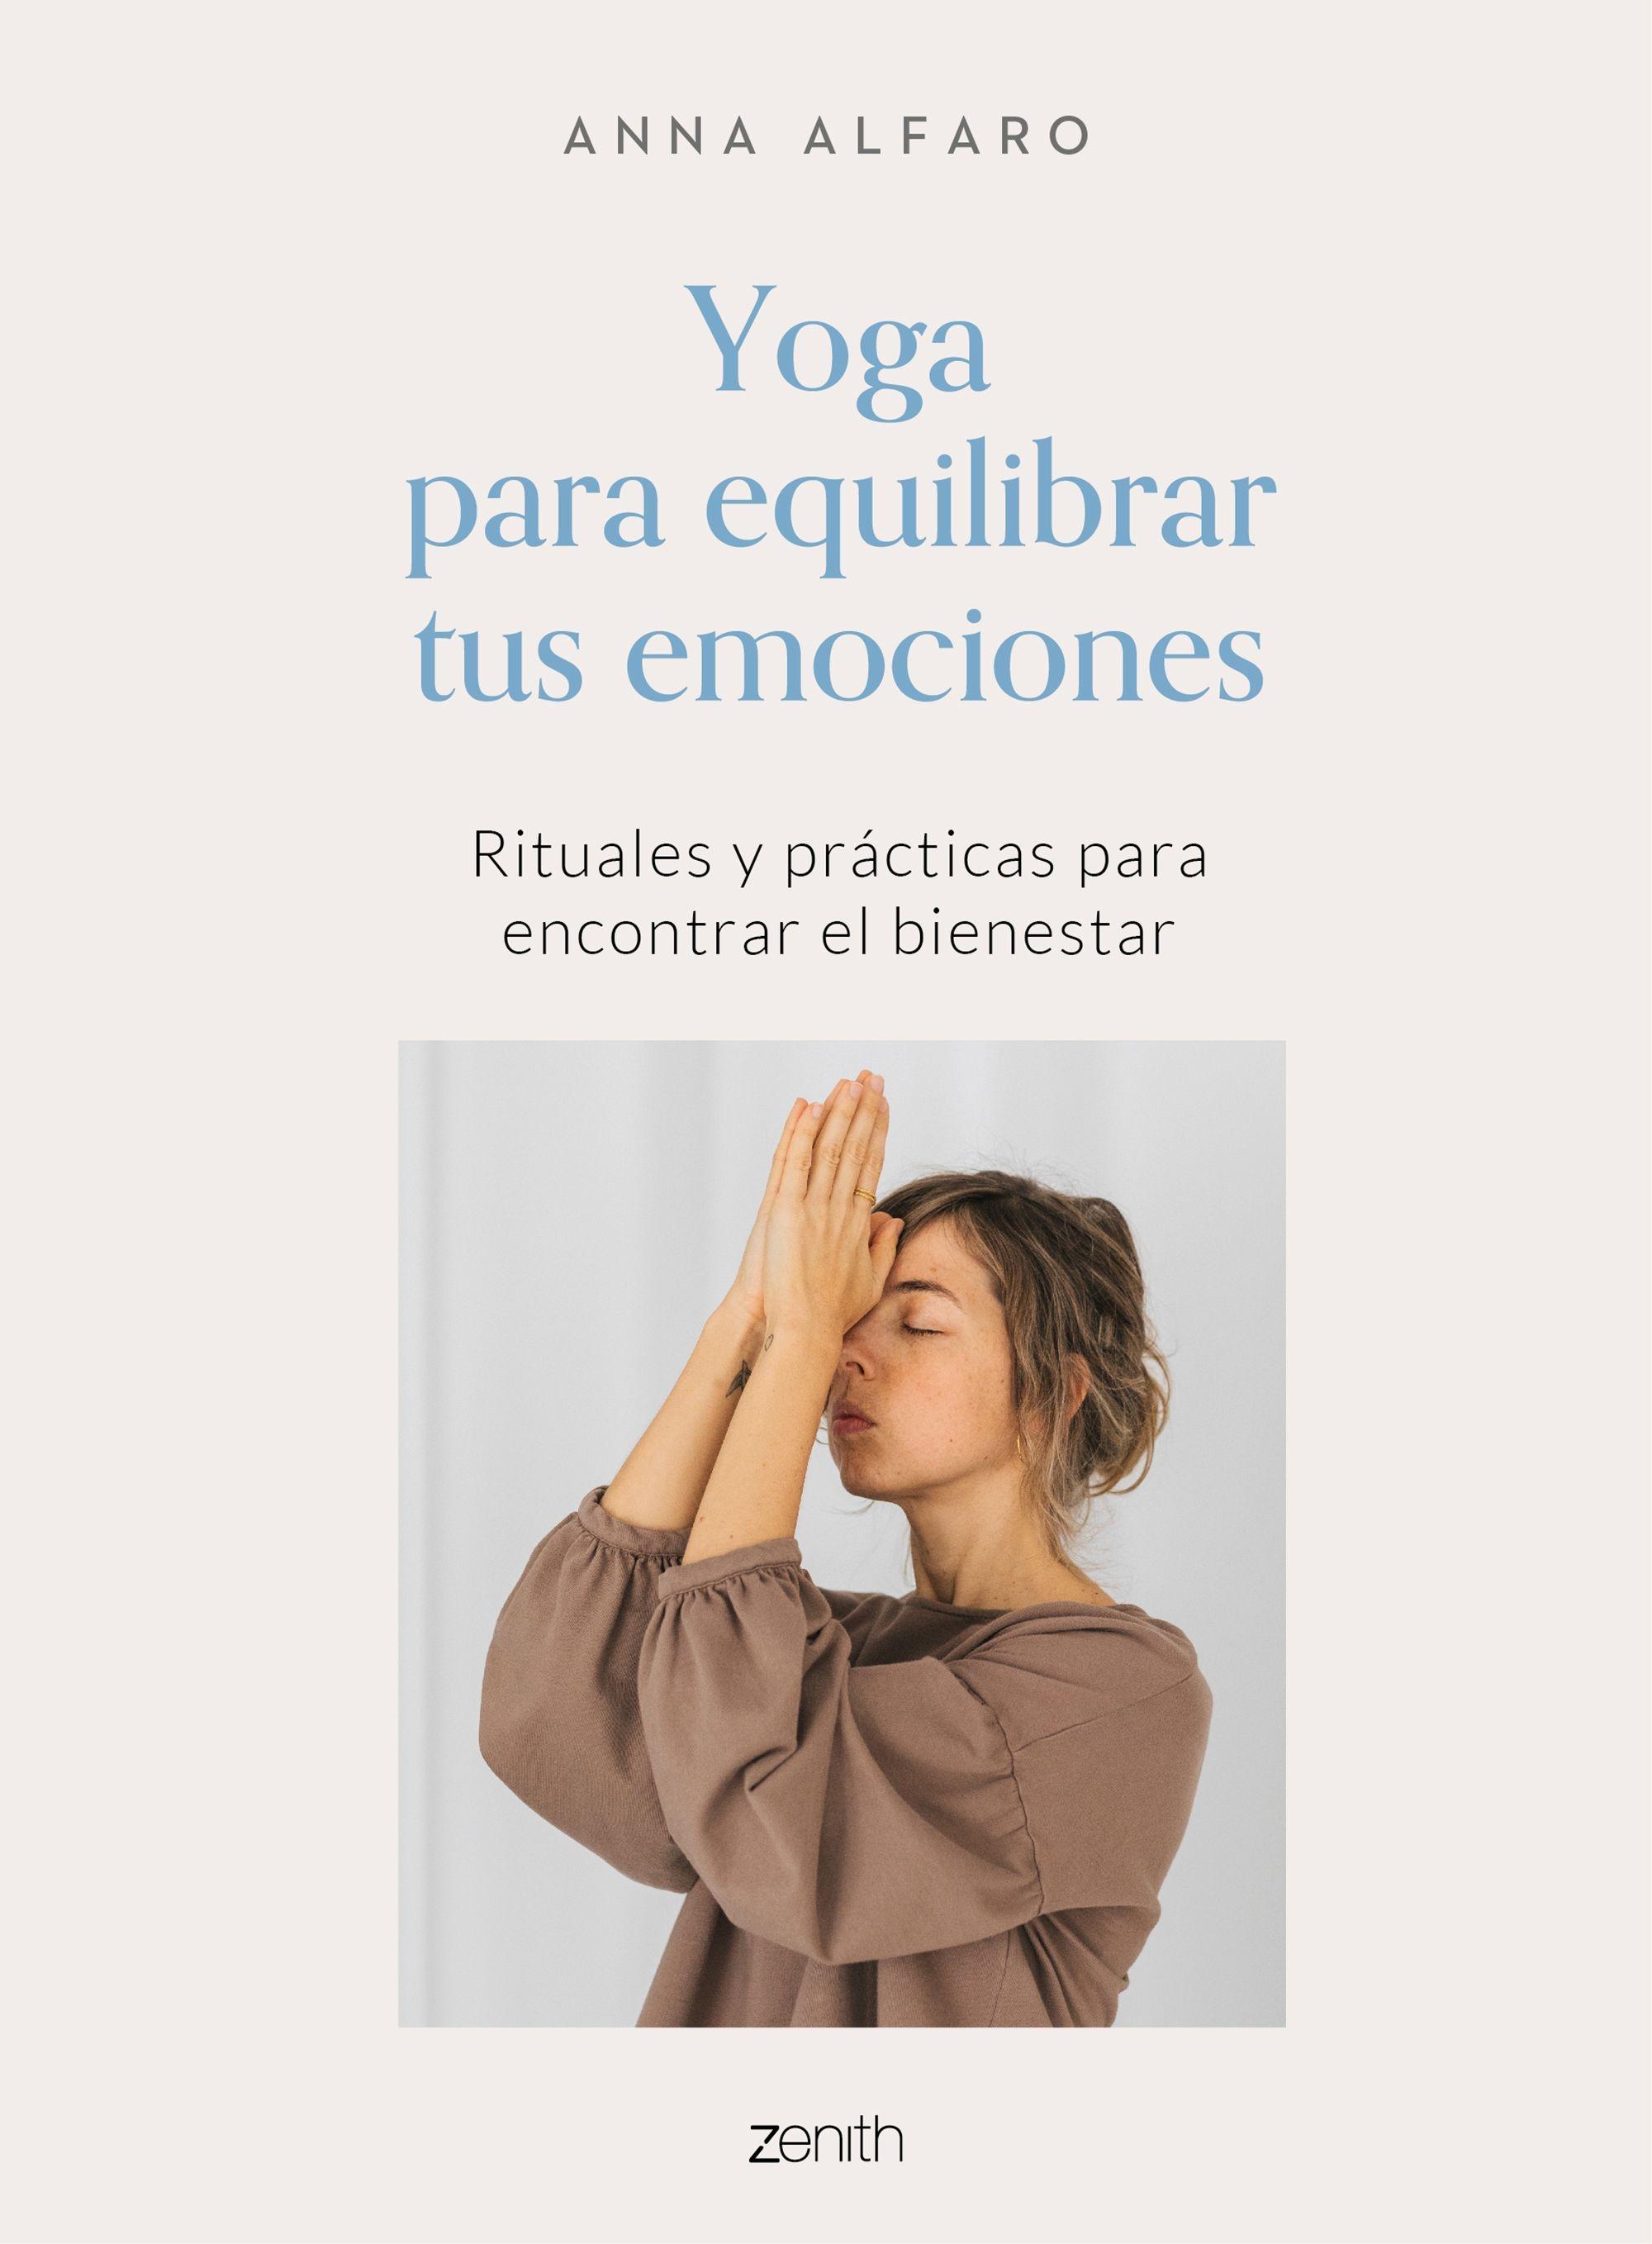 Yoga para equilibrar tus emociones "Rituales y prácticas para encontrar el bienestar"